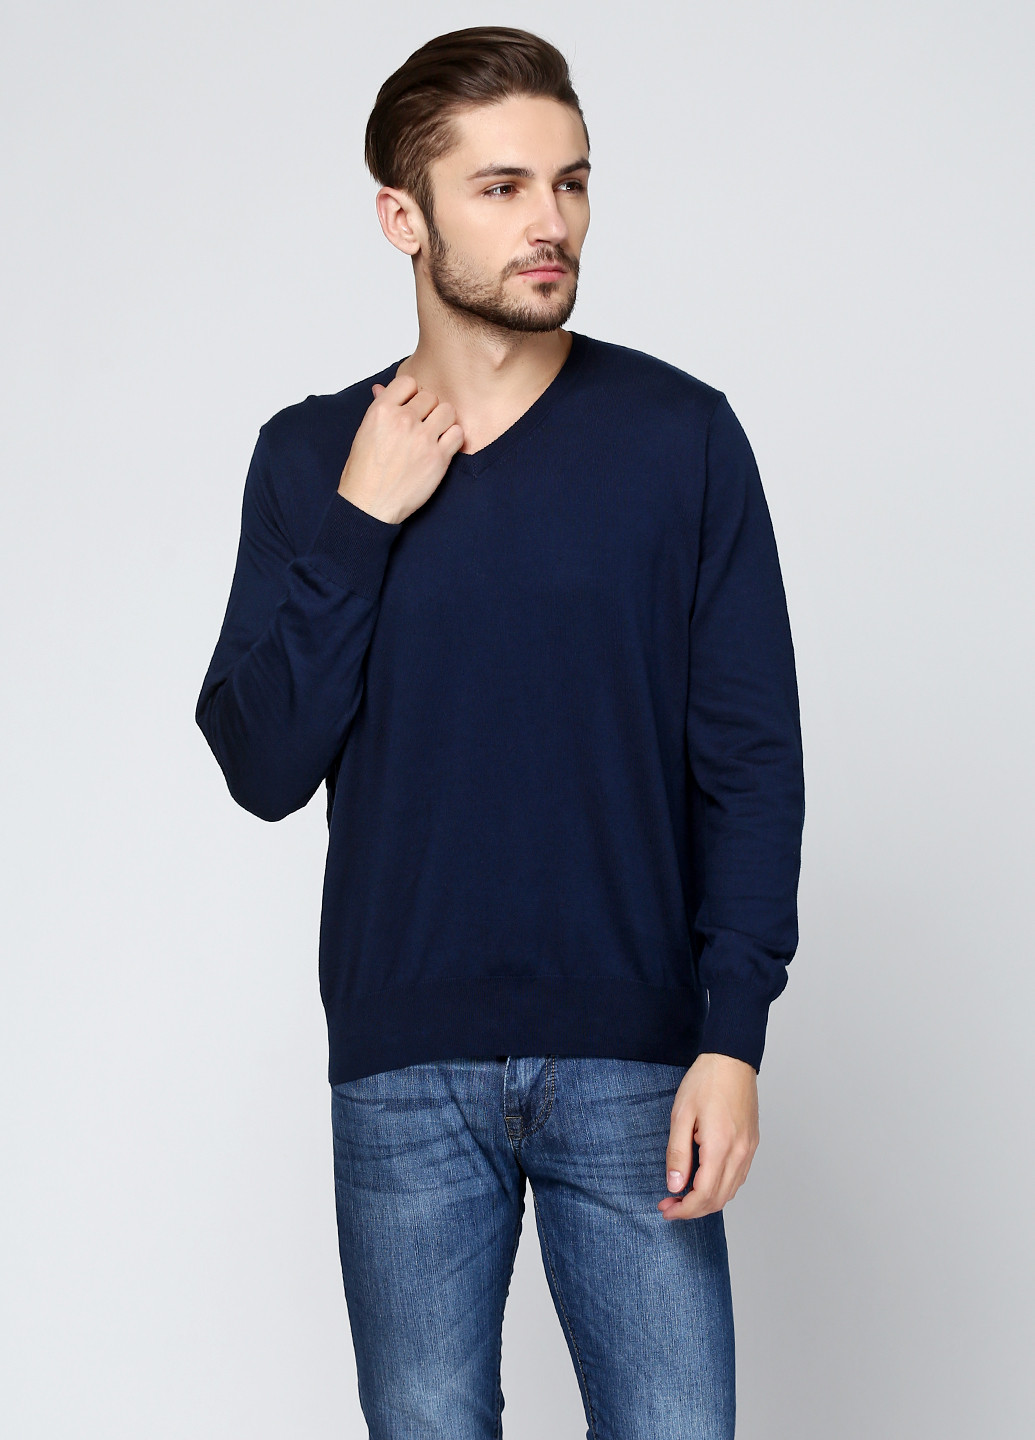 Темно-синий демисезонный пуловер пуловер Cashmere